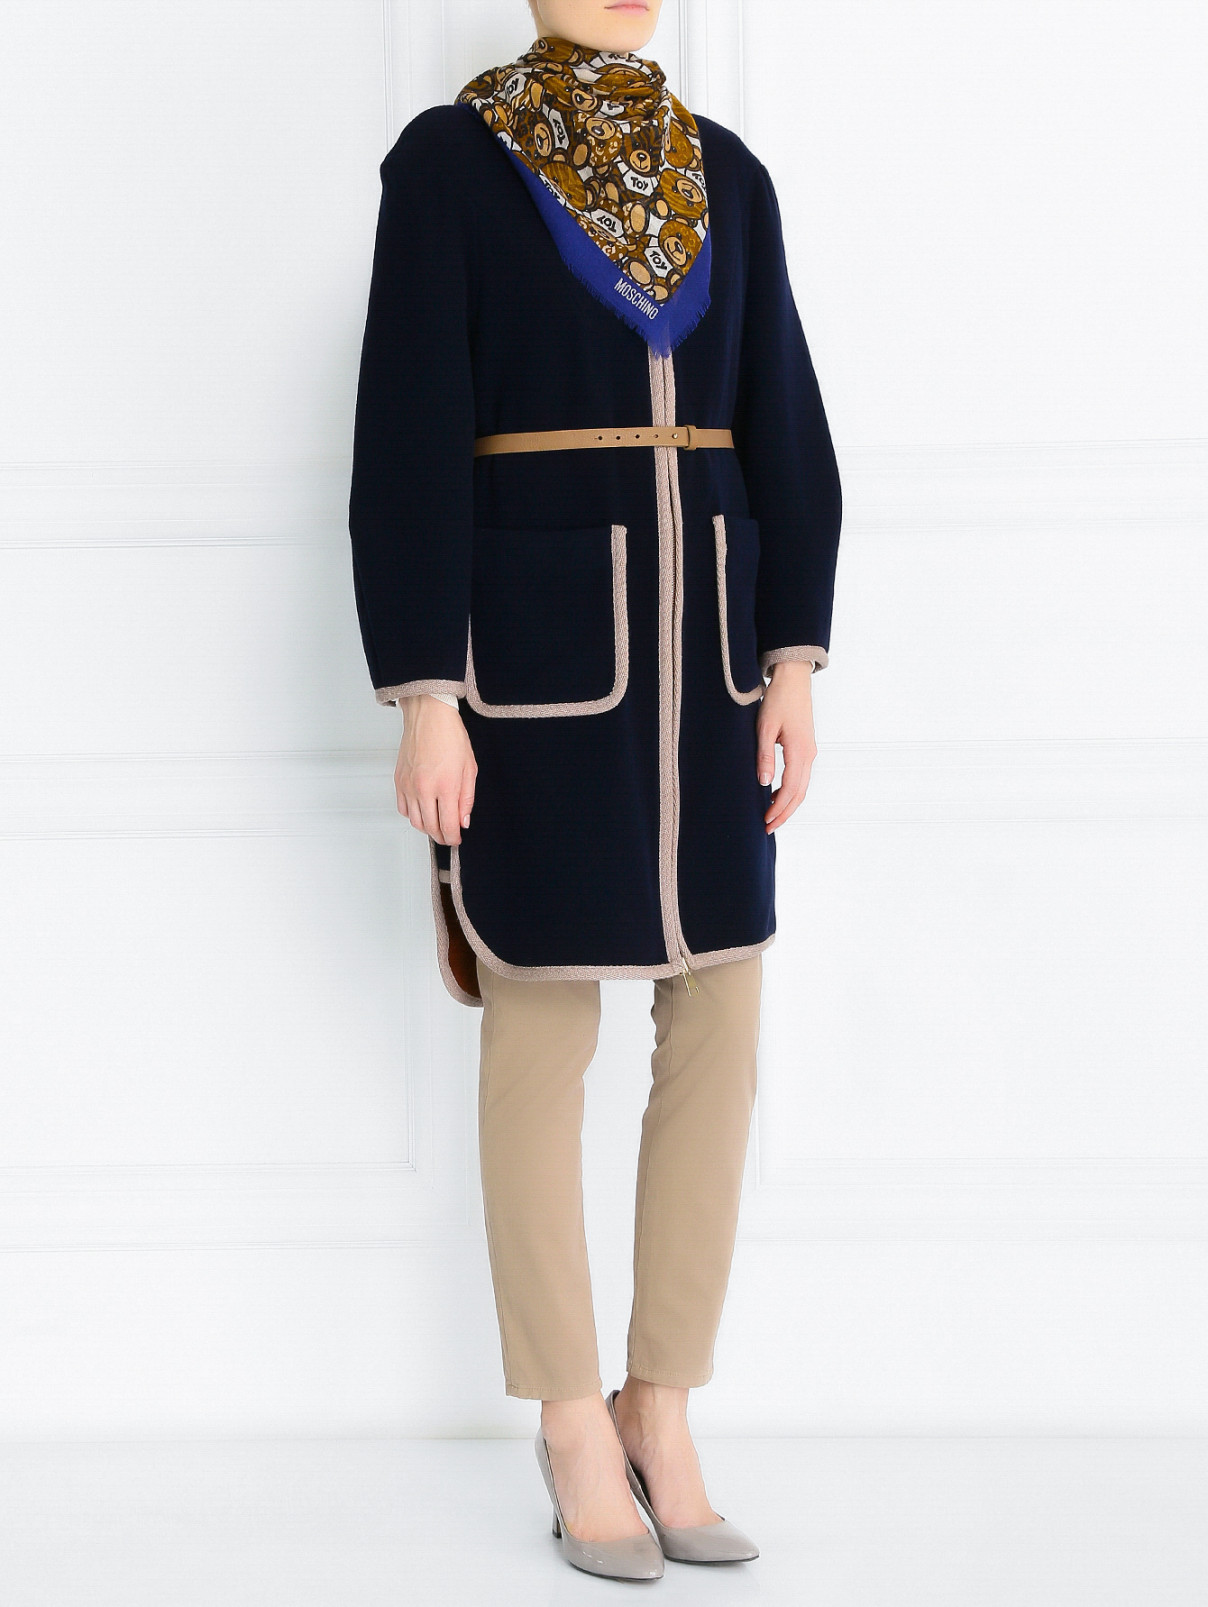 Пальто из шерсти с накладными карманами Tara Jarmon  –  Модель Общий вид  – Цвет:  Синий